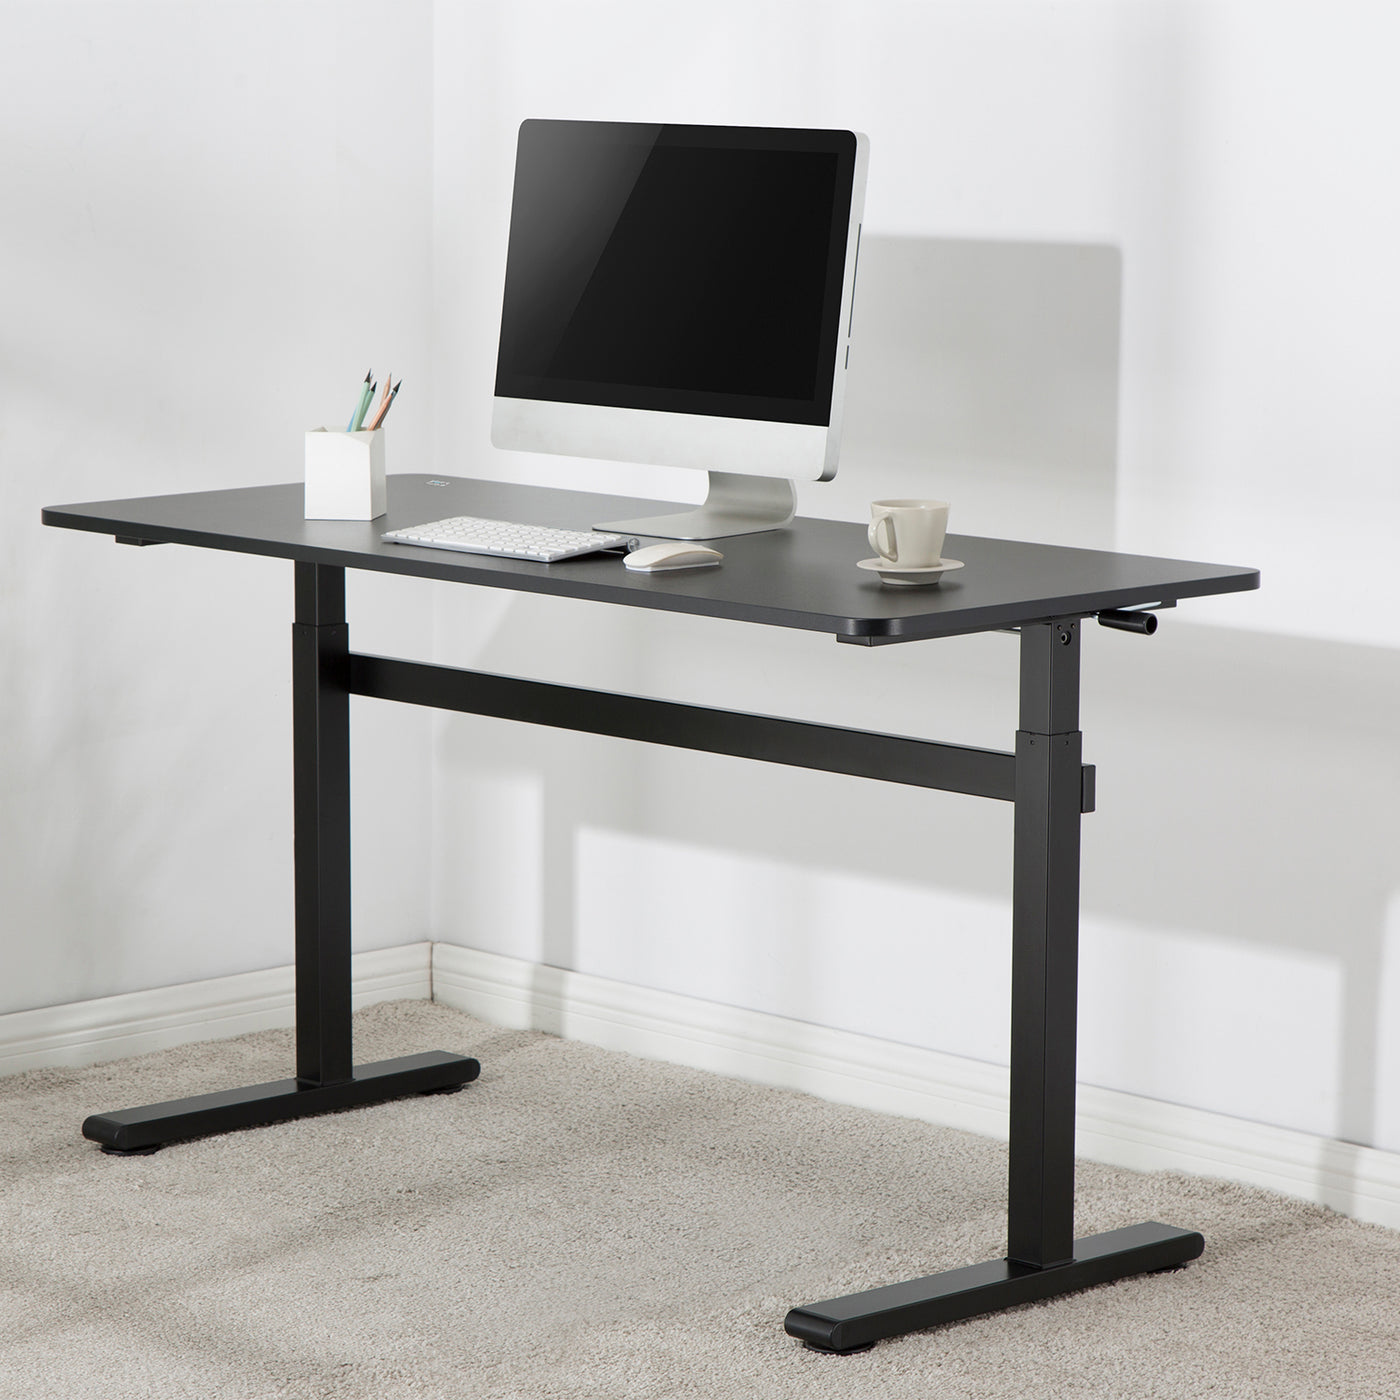 Ergo Office ER-401 Zit-sta bureau 140x60cm Handmatig in hoogte verstelbaar bureau max 117cm Ergonomische tafel Belastbaar tot 40kg Zwart